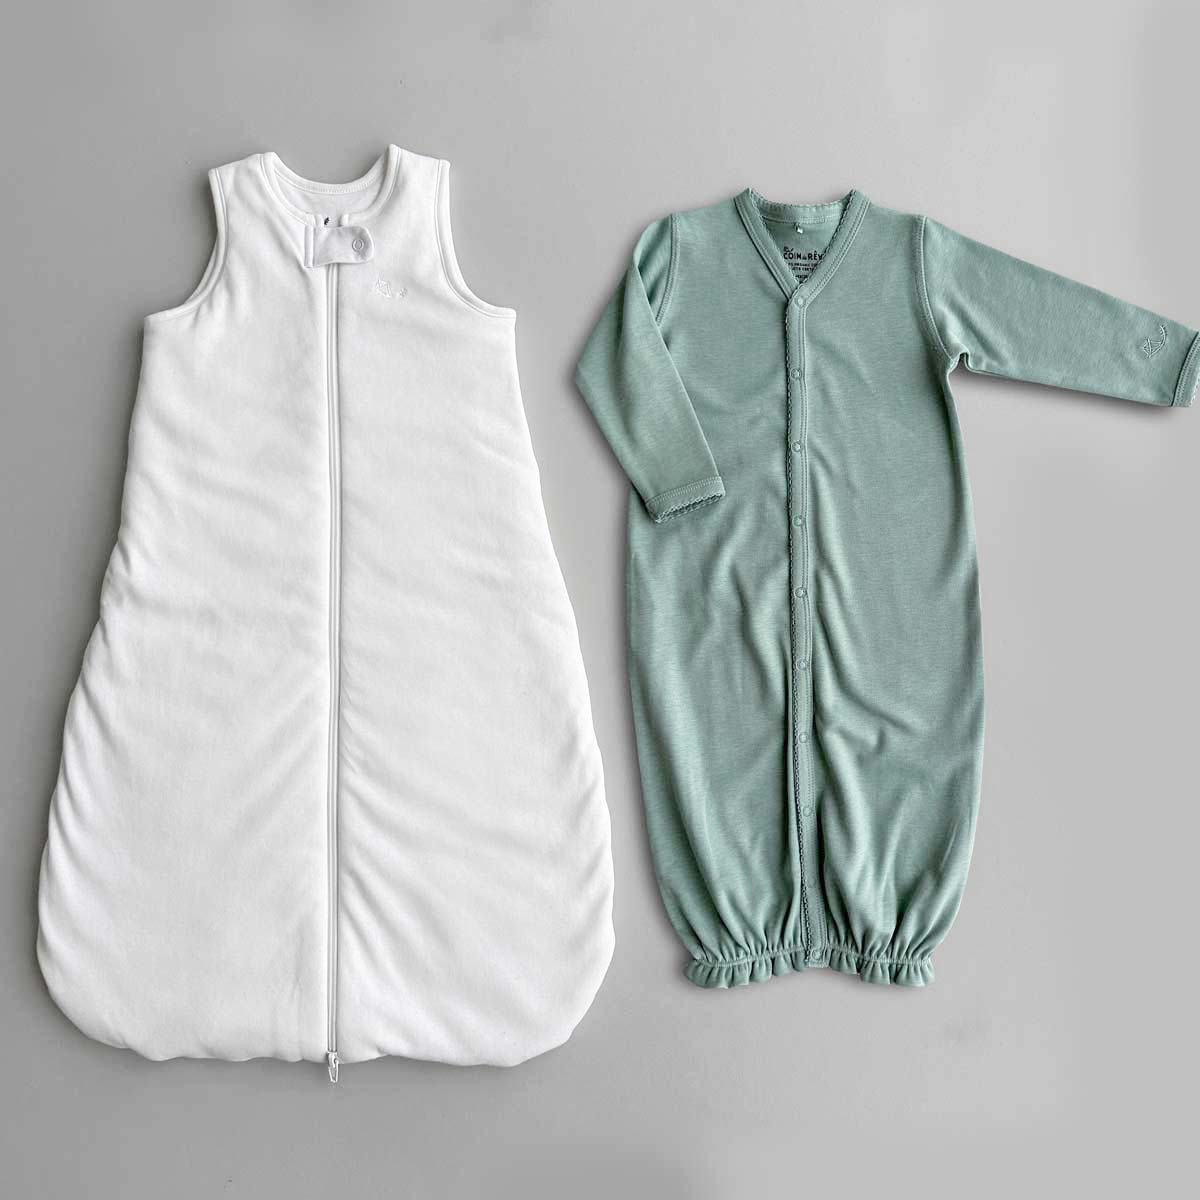 Krämvit Sovpåse (sleep sack) och grön sovpåse (sleeping gown) bredvid varandra på plan grå yta.